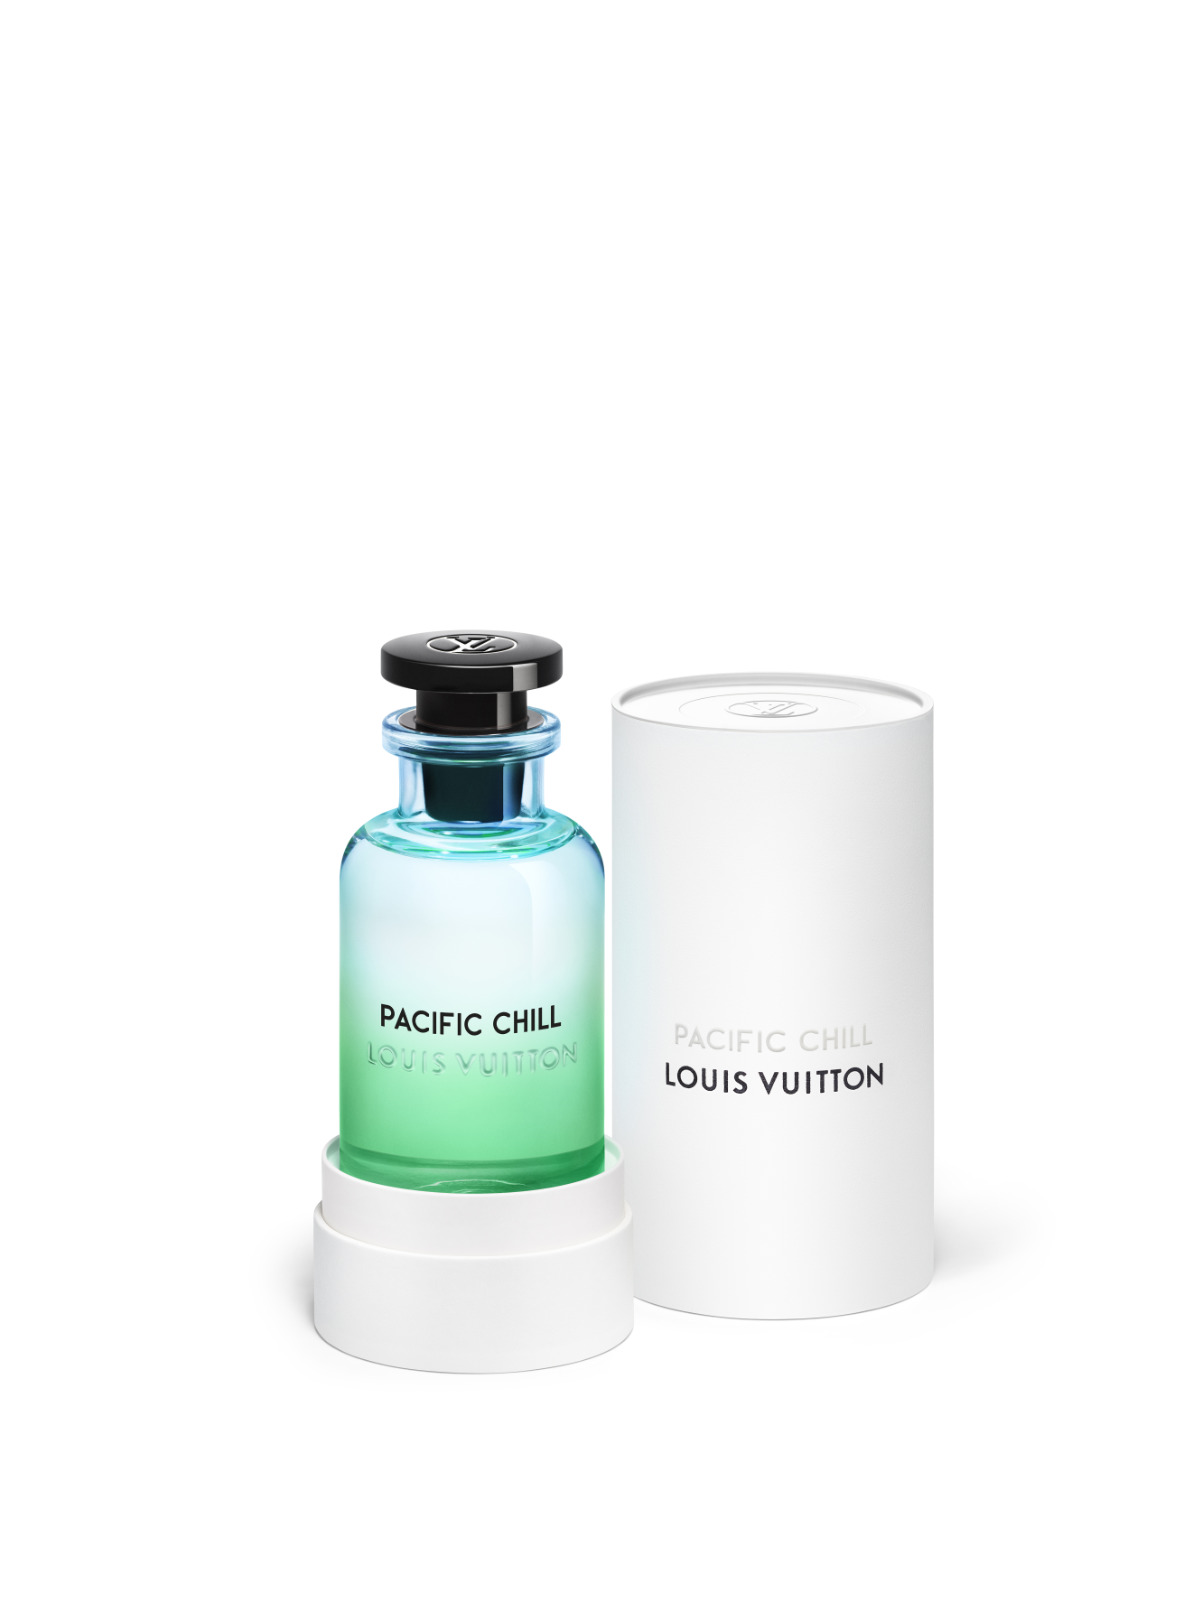 Louis Vuitton Presents Its New Pacific Chill Parfum De Cologne